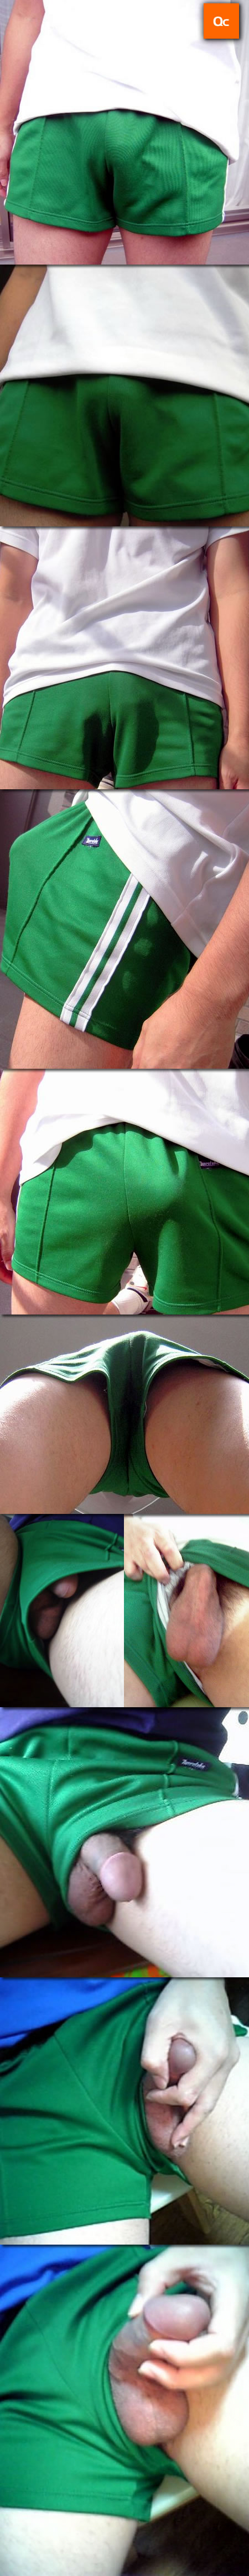 綠色短褲